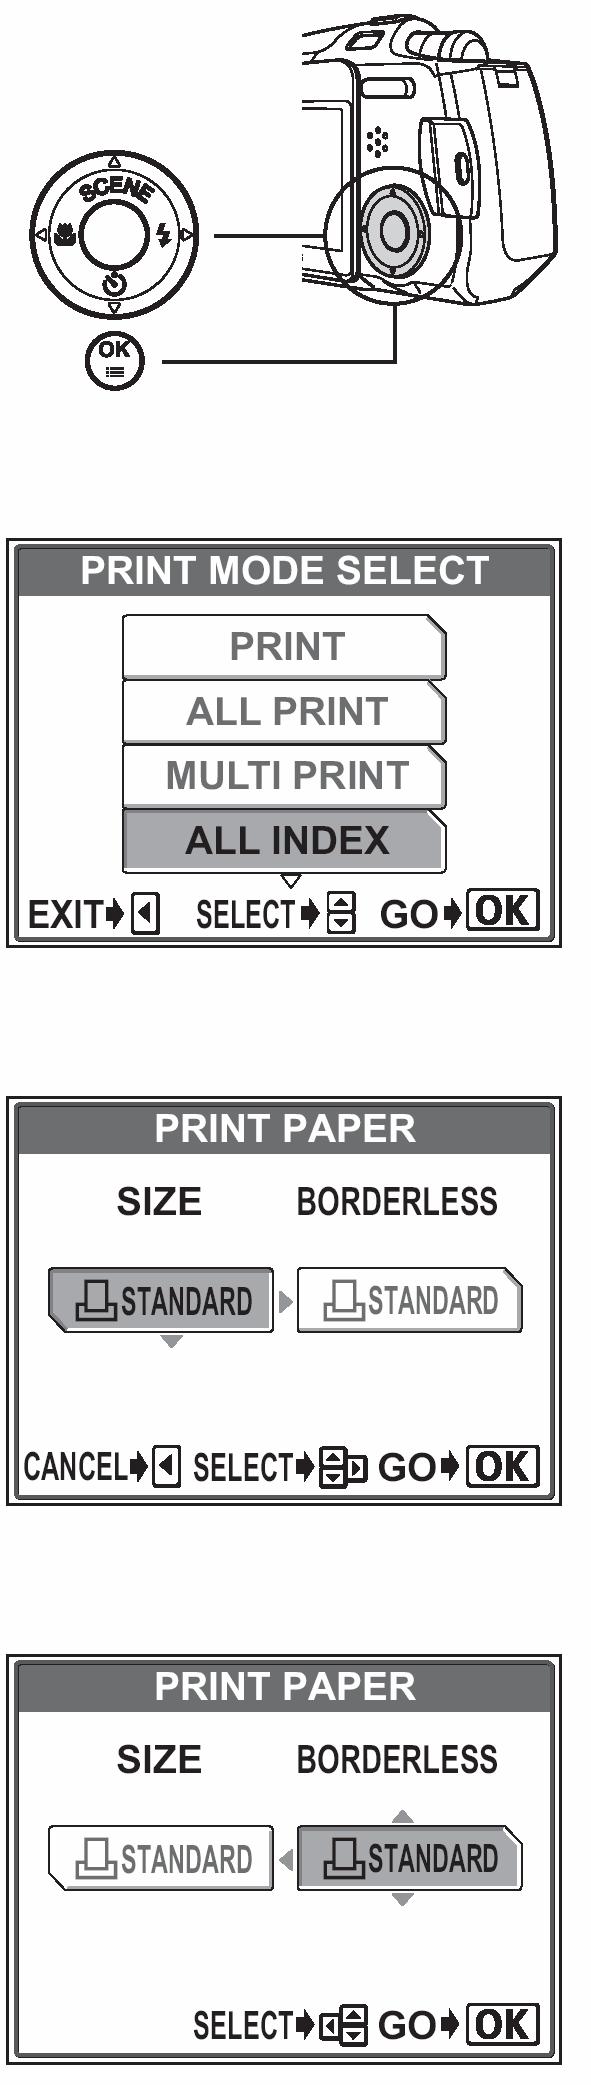 Drukowanie indeksu (ALL INDEX) / Tryb zamówienia wydruku (PRINT ORDER) 1 Na ekranie [PRINT MODE SELECT] naciśnij strzałkę lub, aby wybrać pozycję [ALL INDEX] lub [PRINT ORDER], a następnie naciśnij